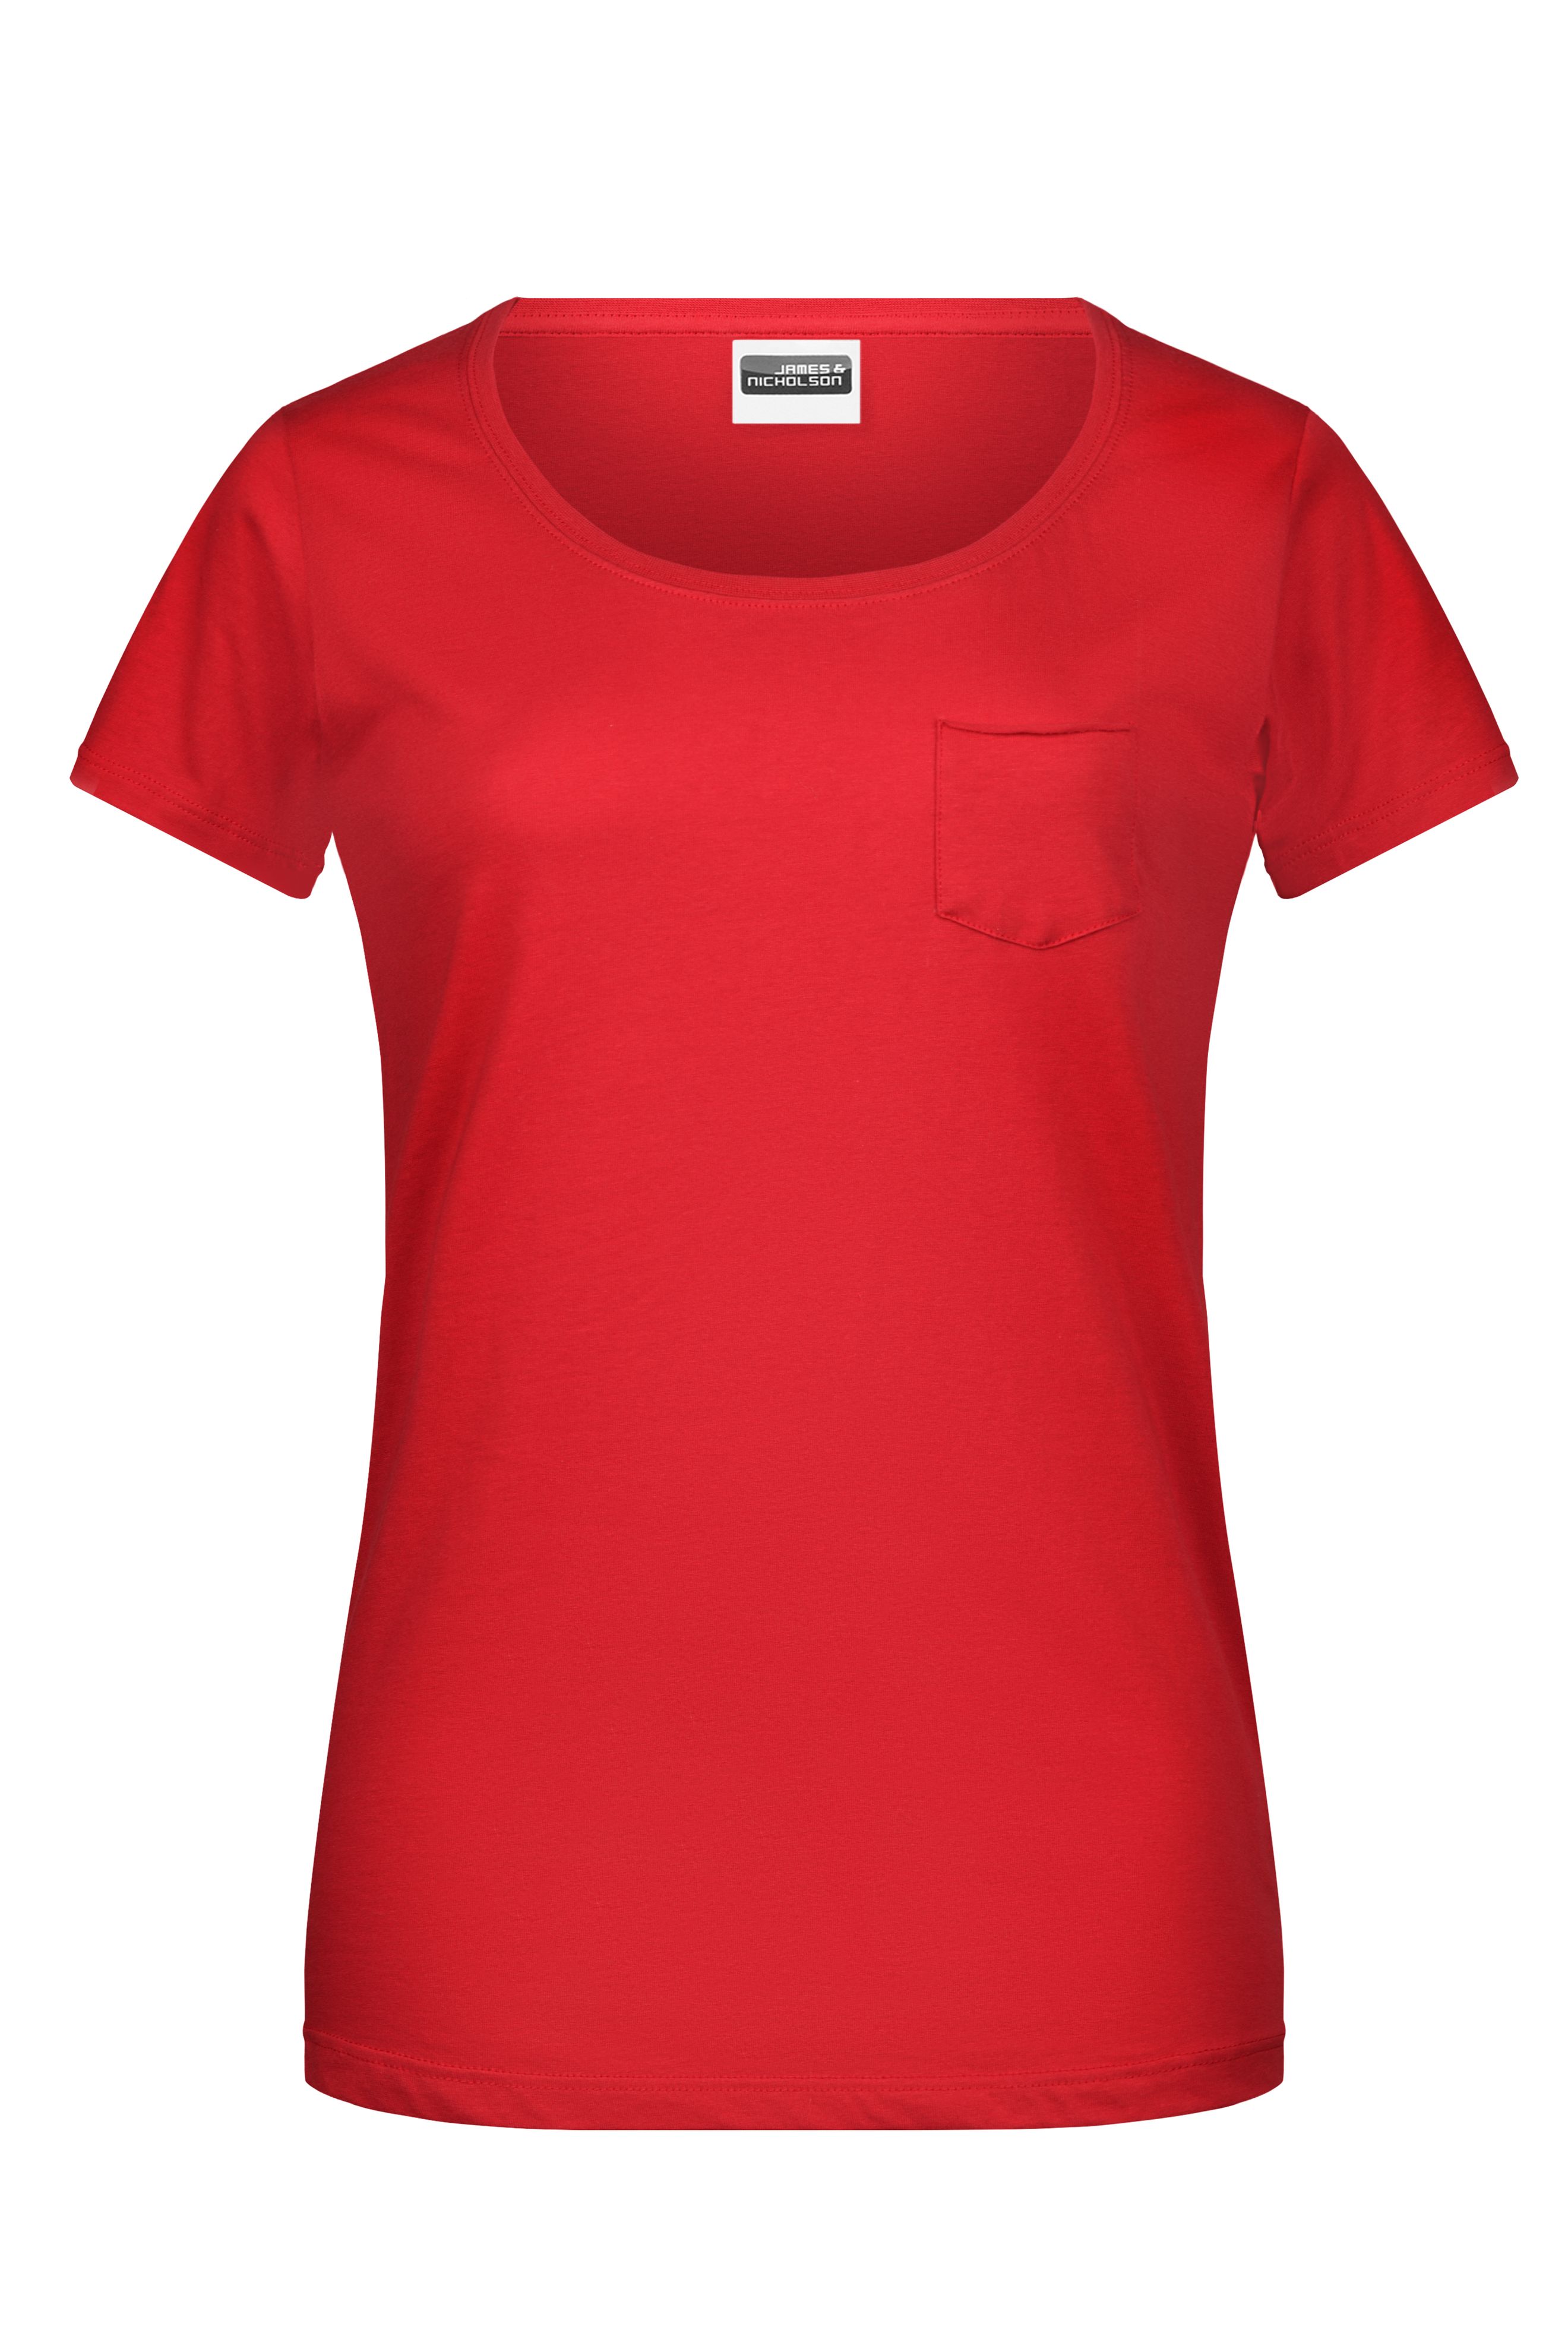 Ladies'-T Pocket 8003 T-Shirt mit modischer Brusttasche